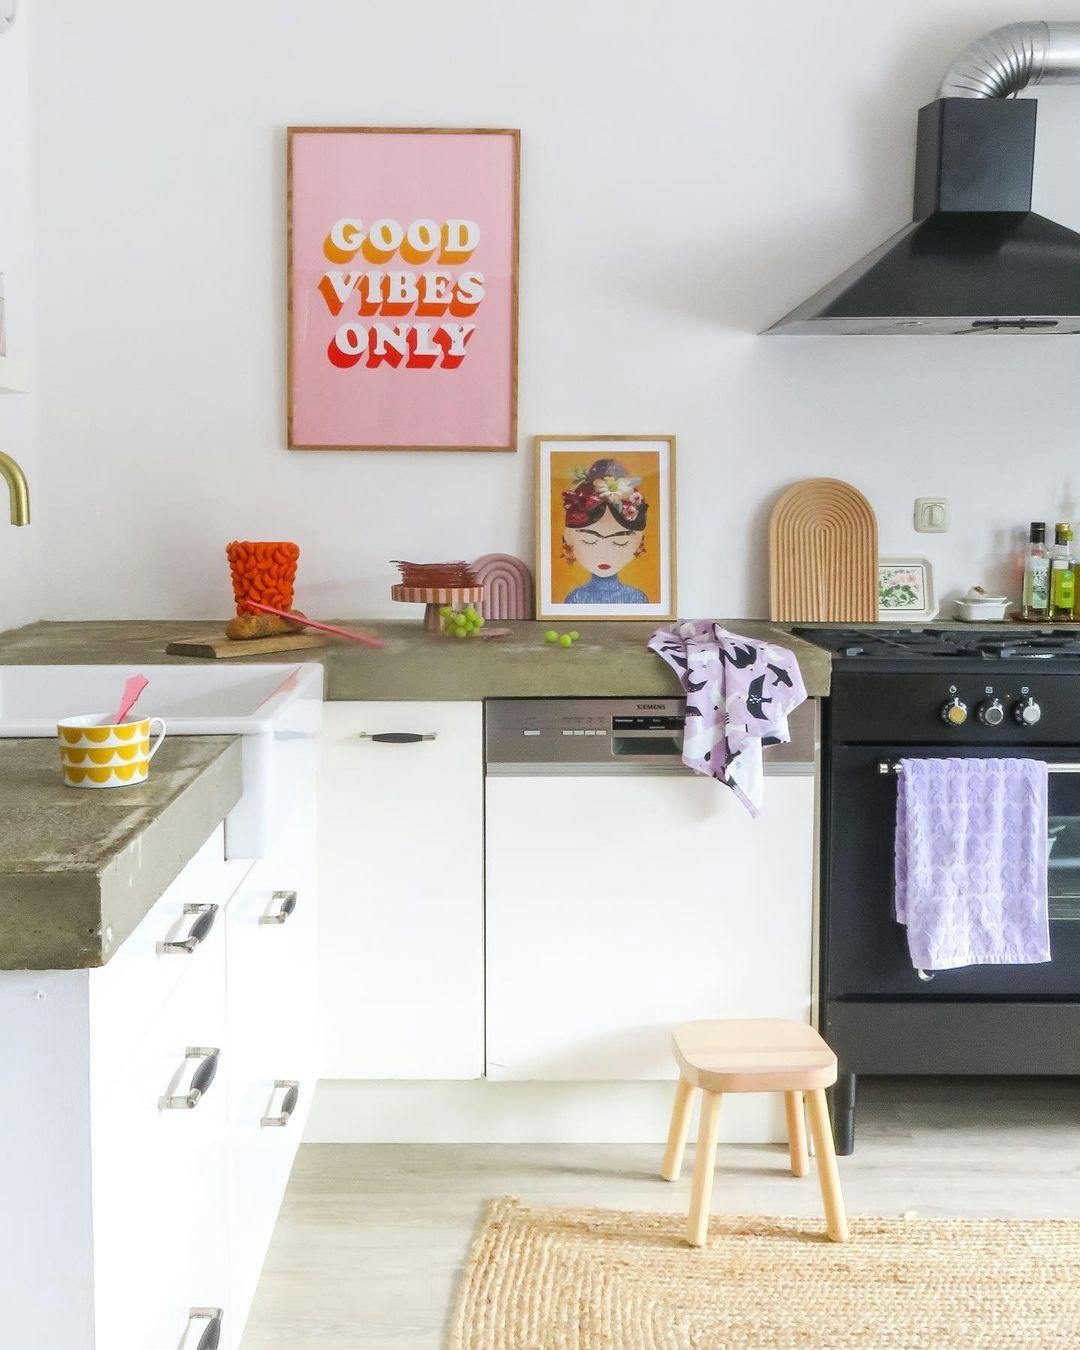 keuken-kitchen-interieuradvies